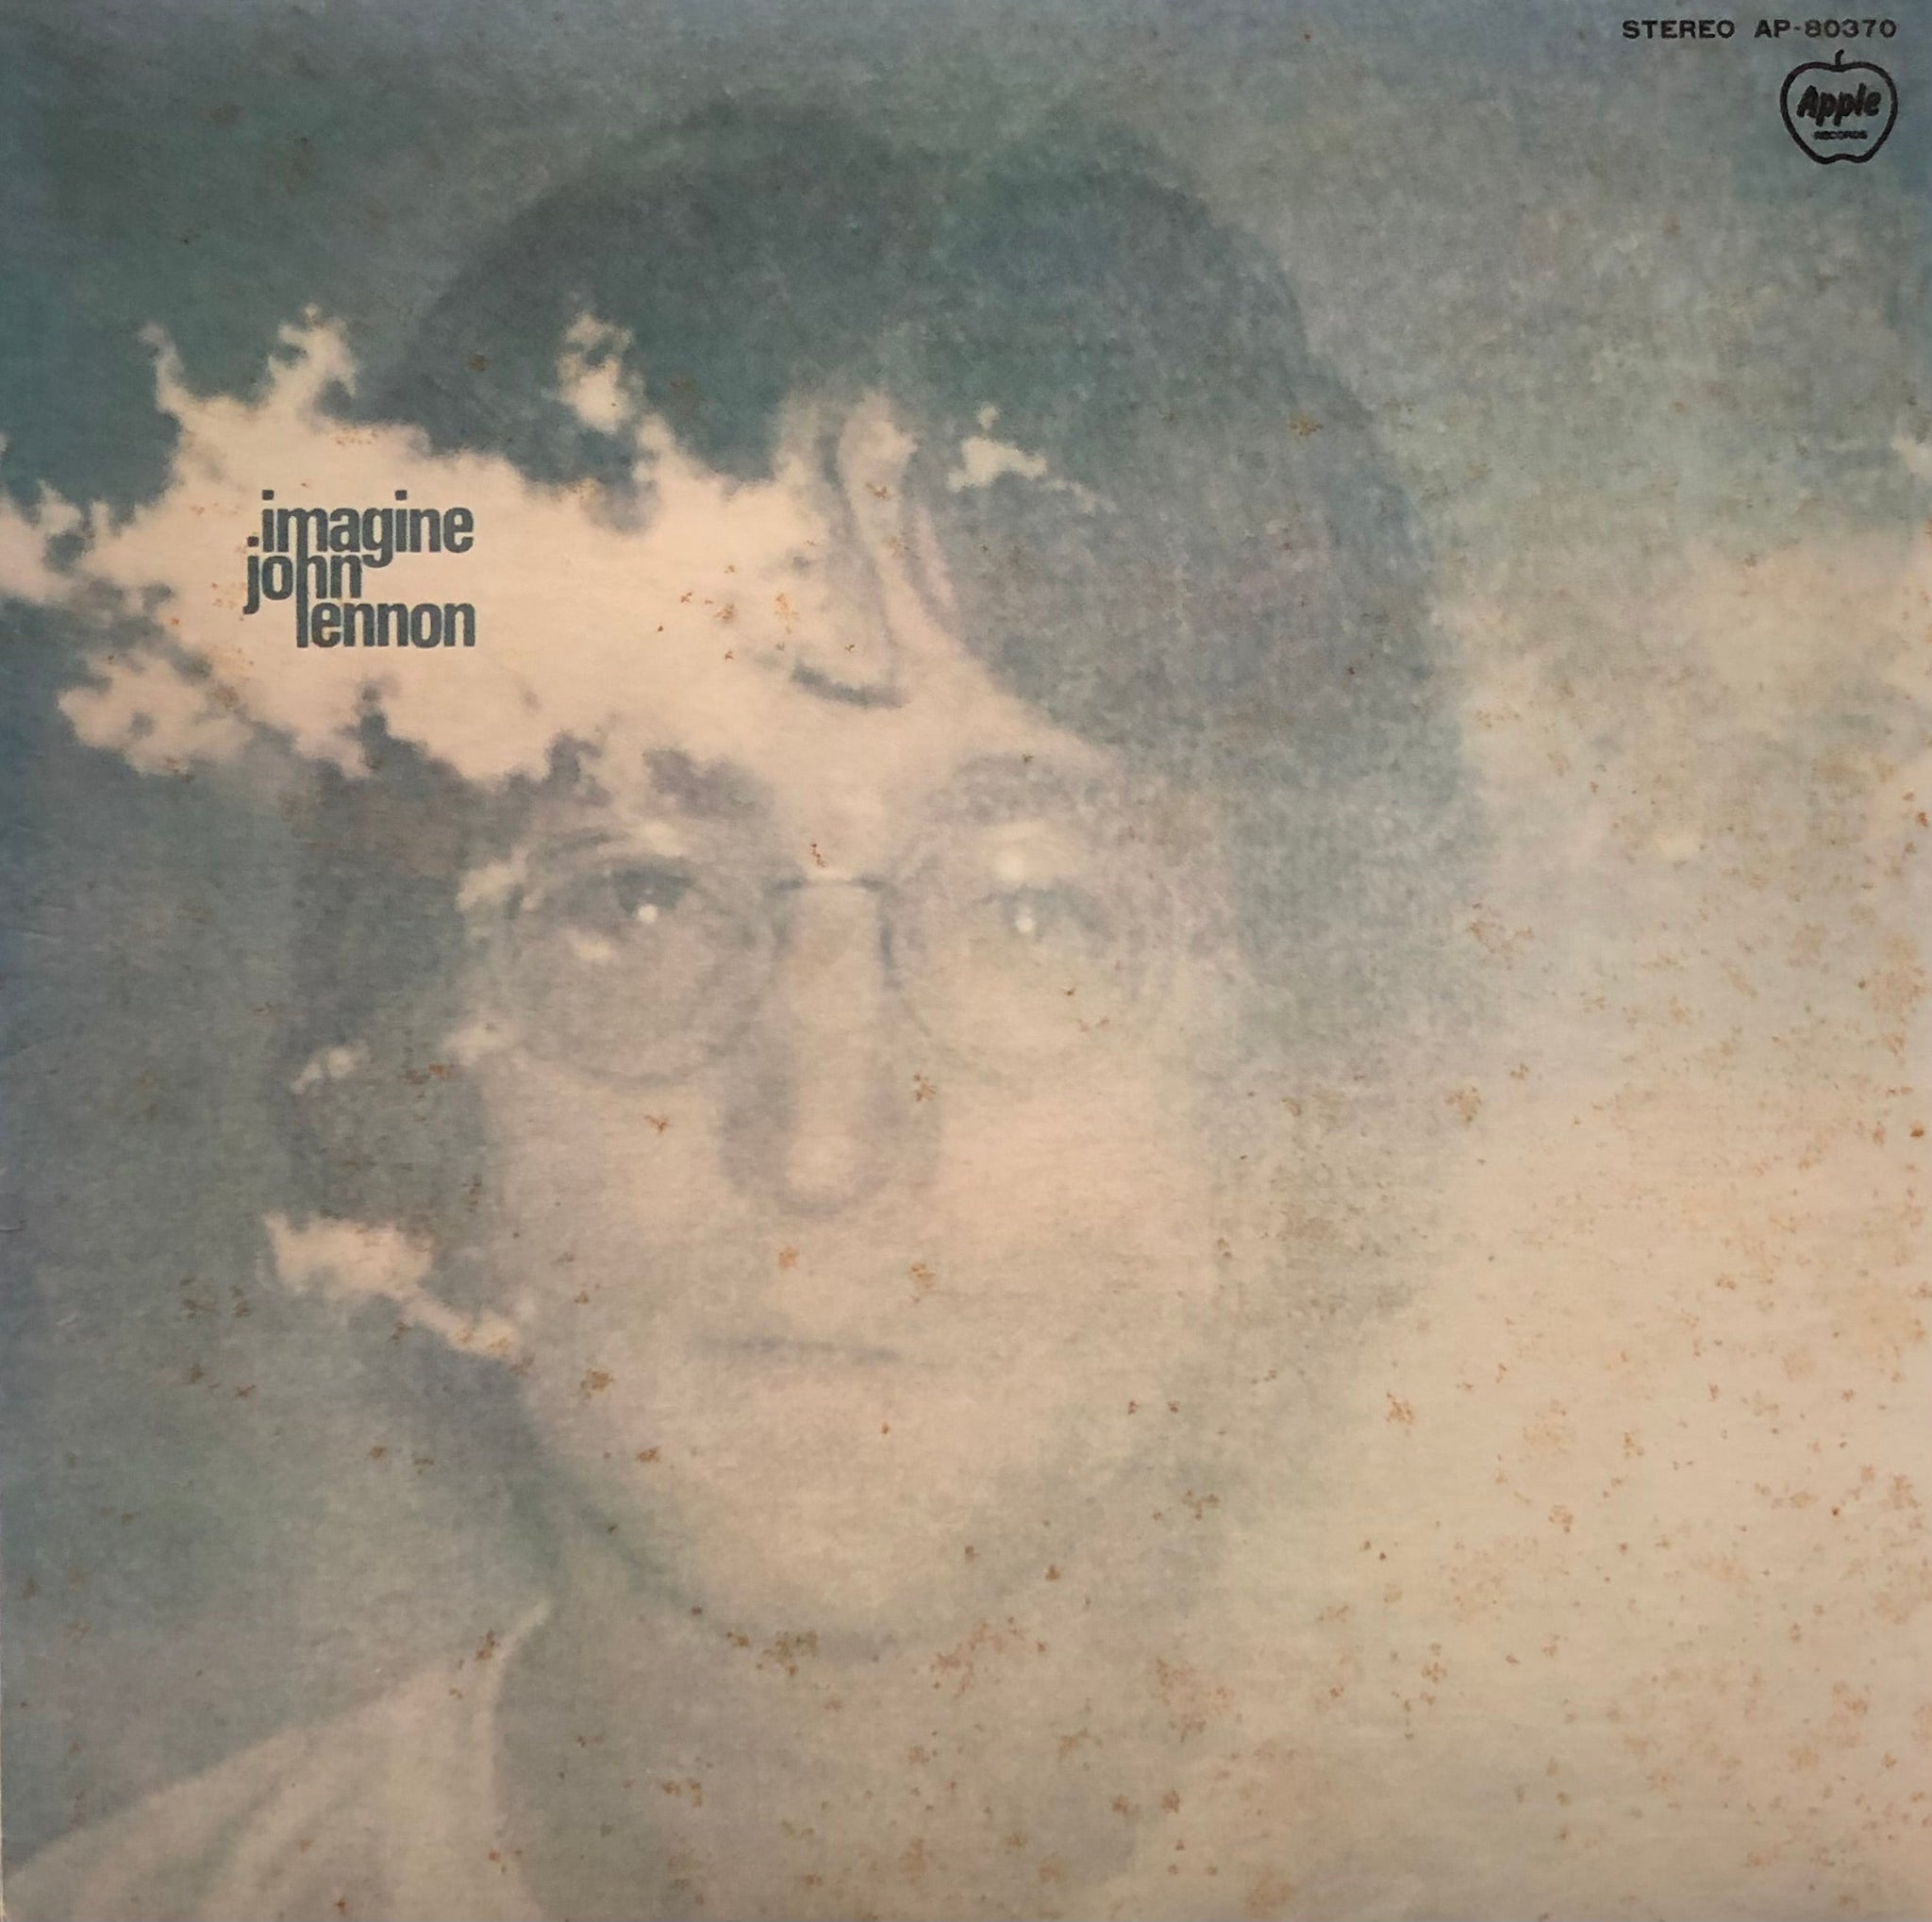 John lennon 【imagine】LPレコード 赤盤 - 洋楽